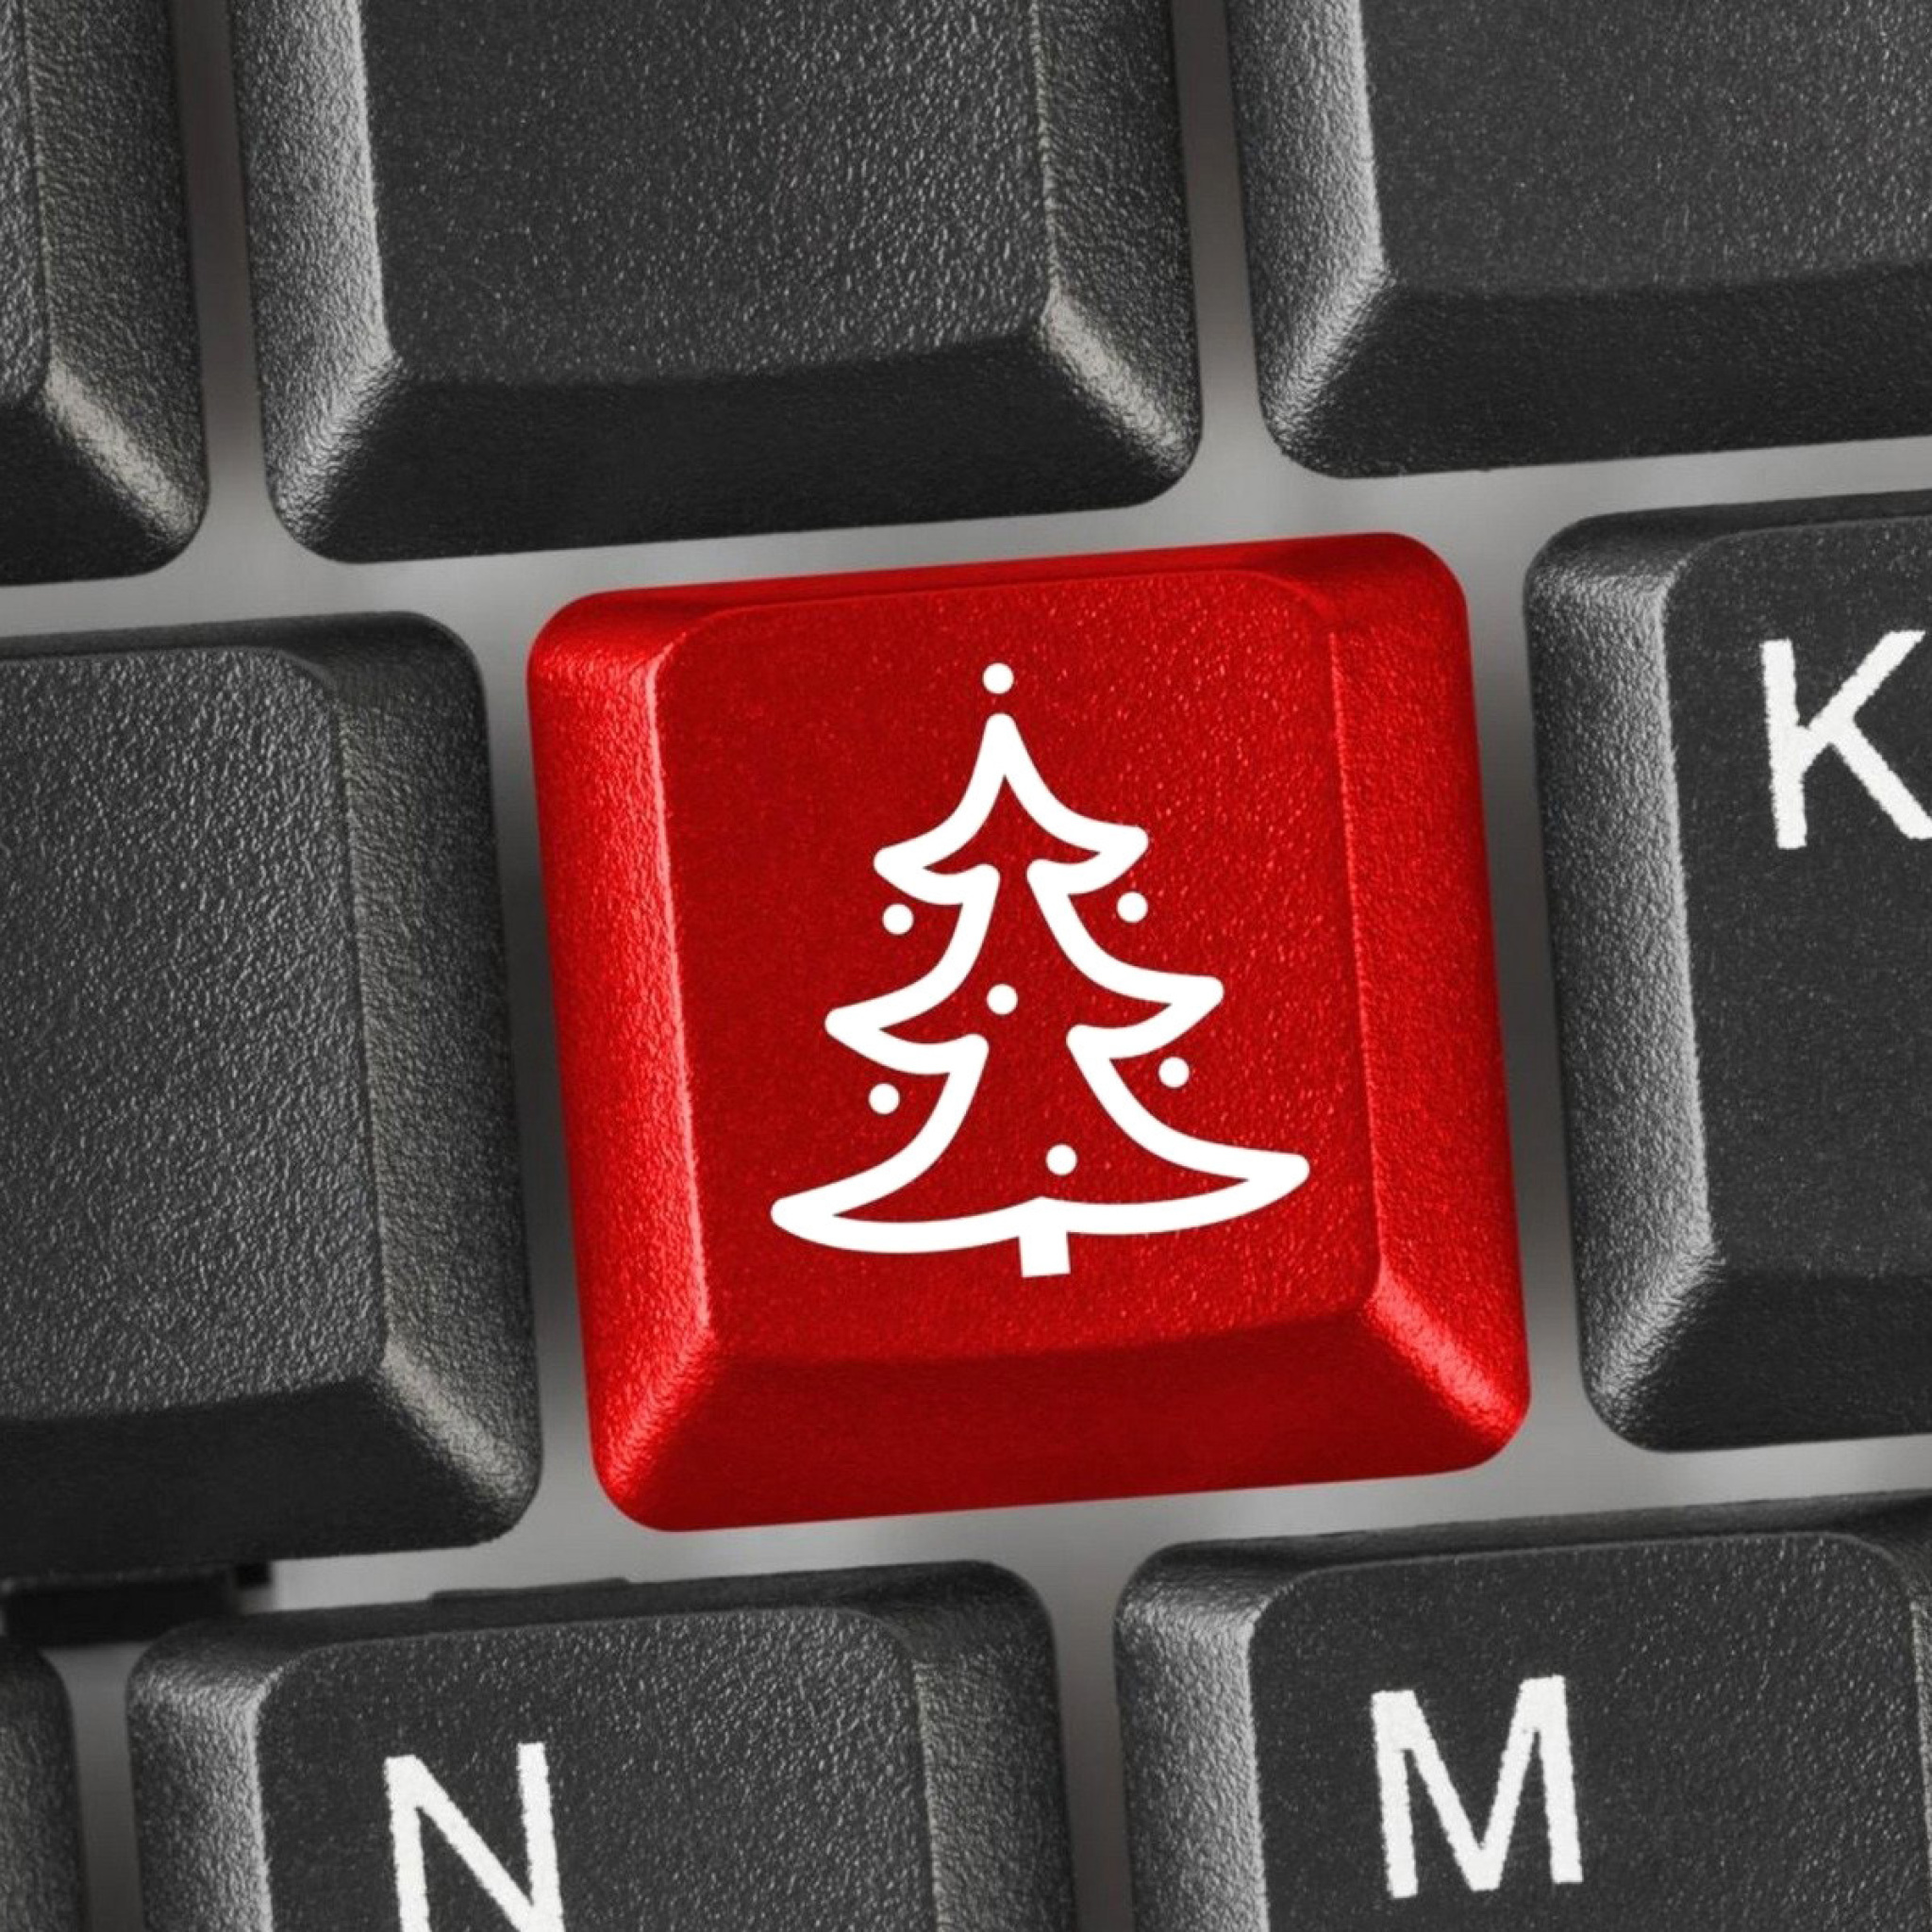 Sfondi Christmas Tree on Computer Keyboard 2048x2048